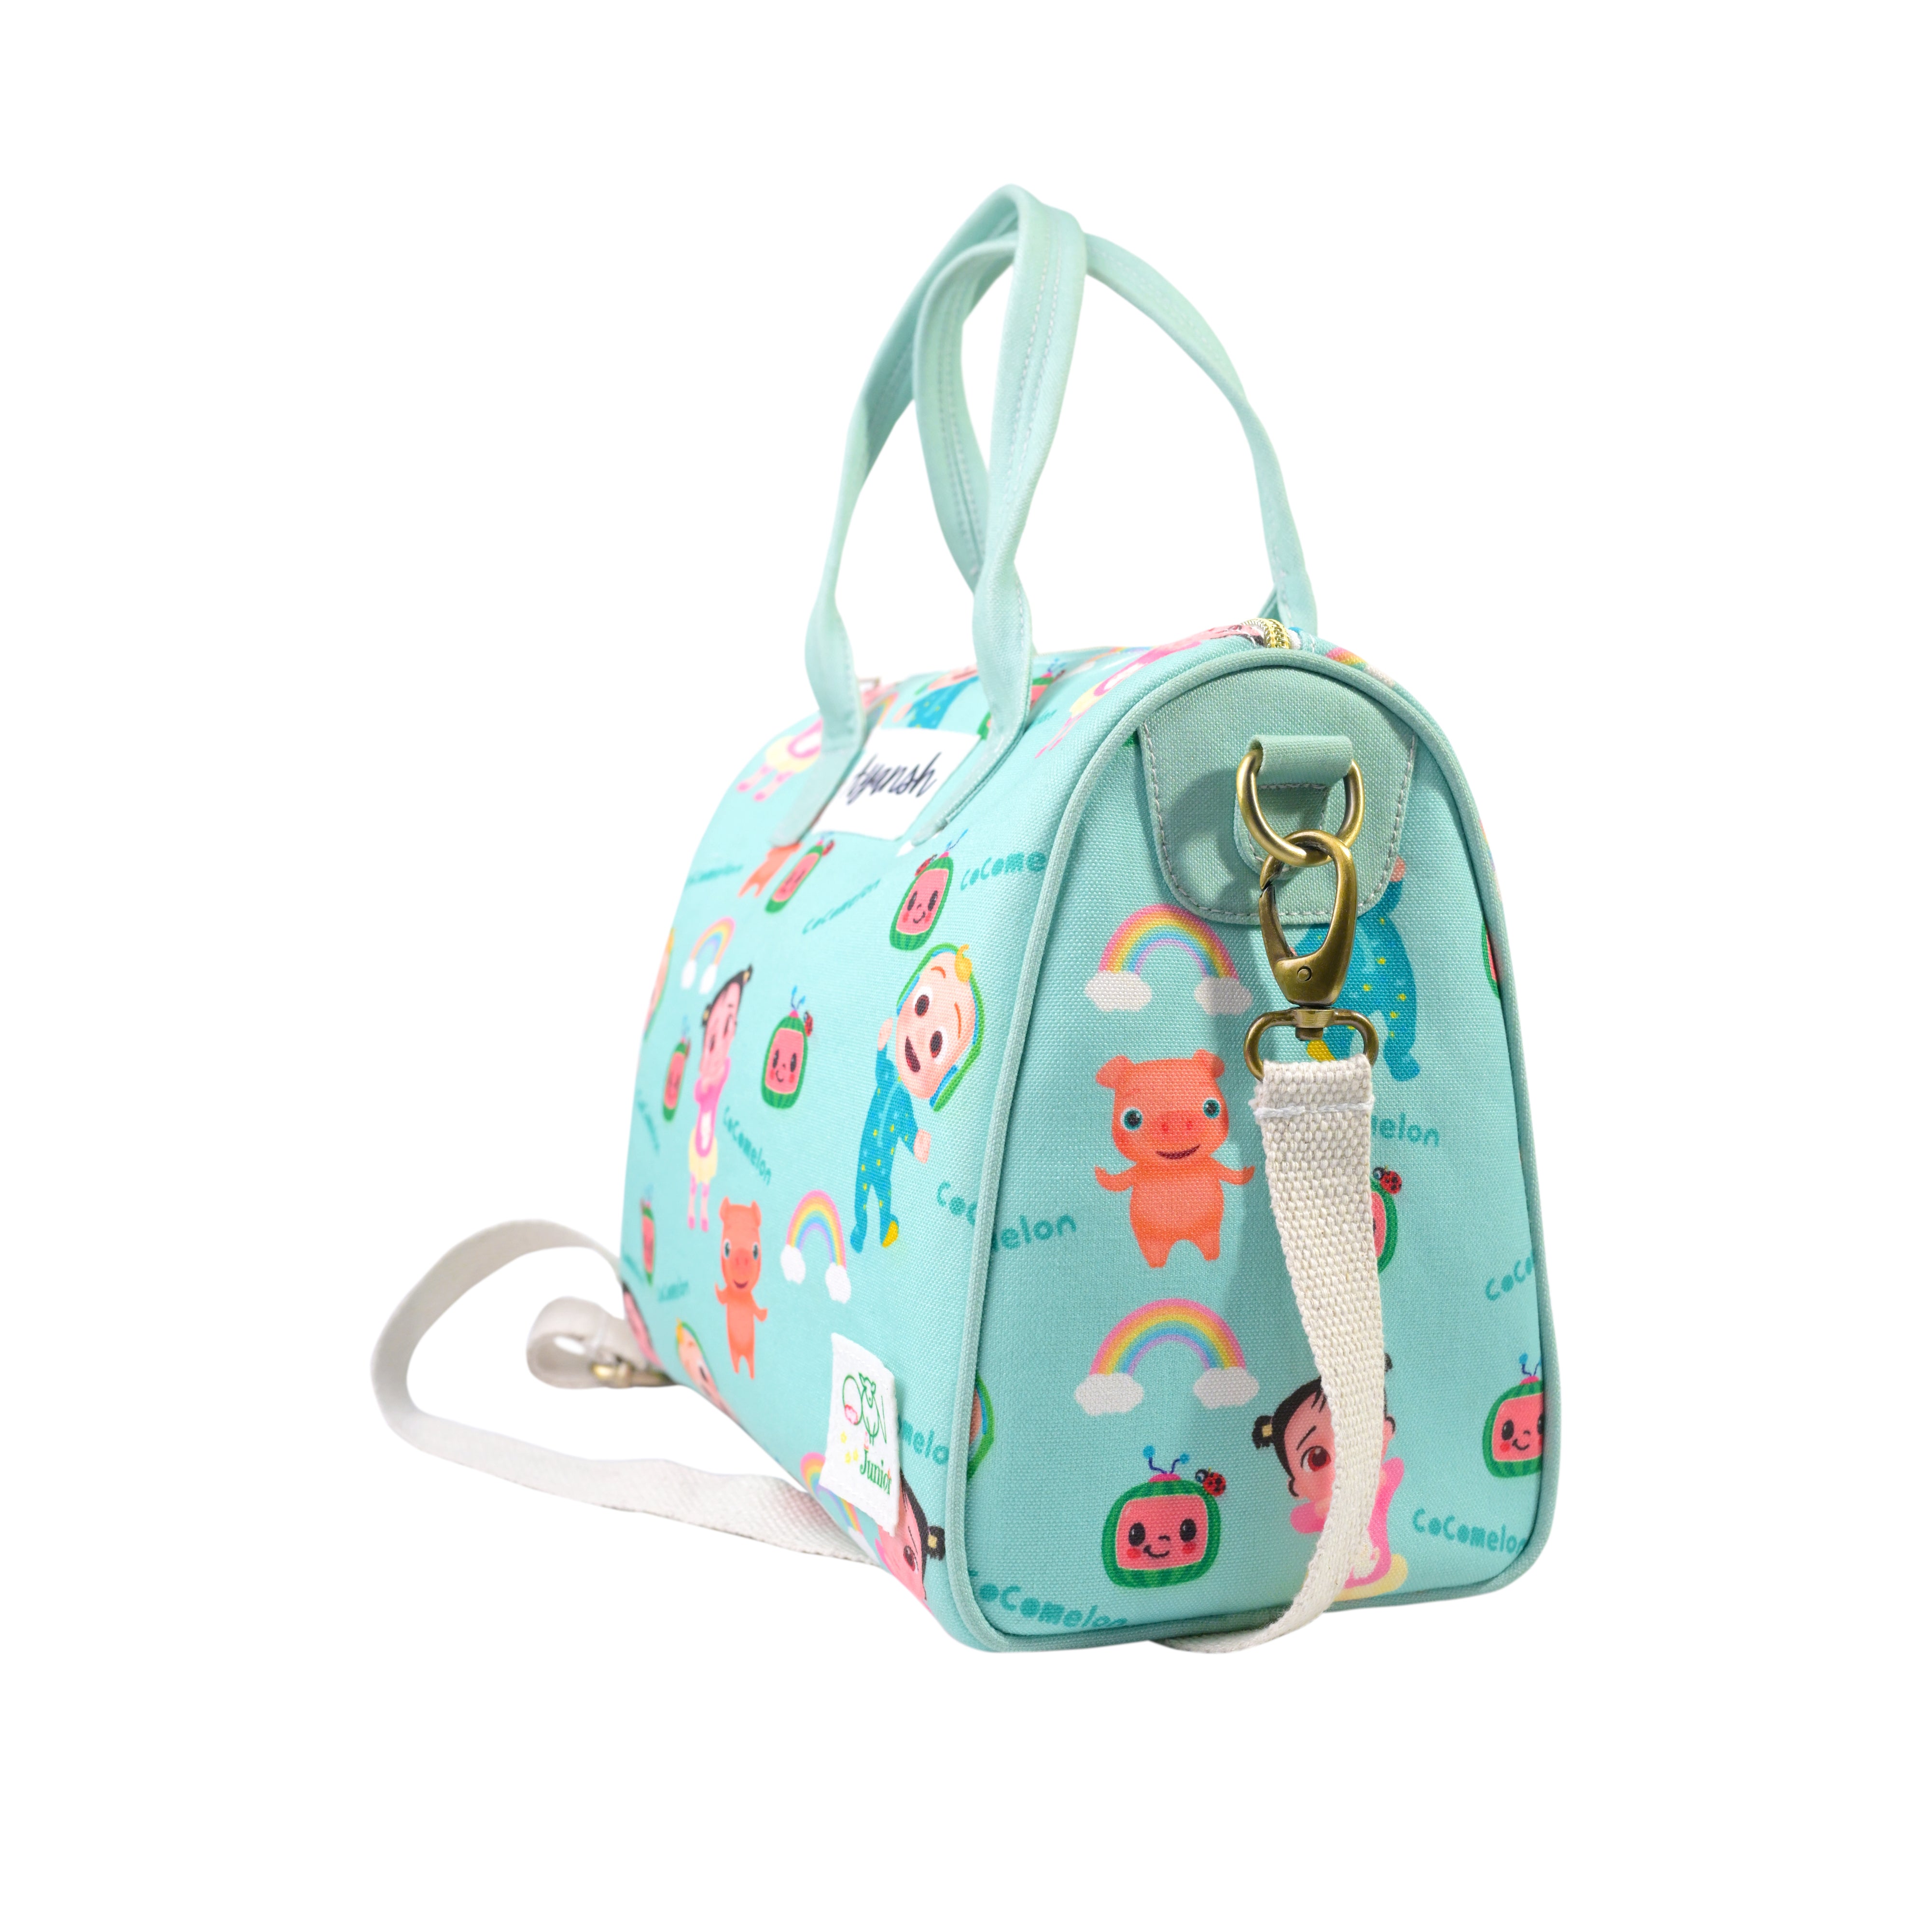 Junior Traveller Personalised Mini Duffle Bag